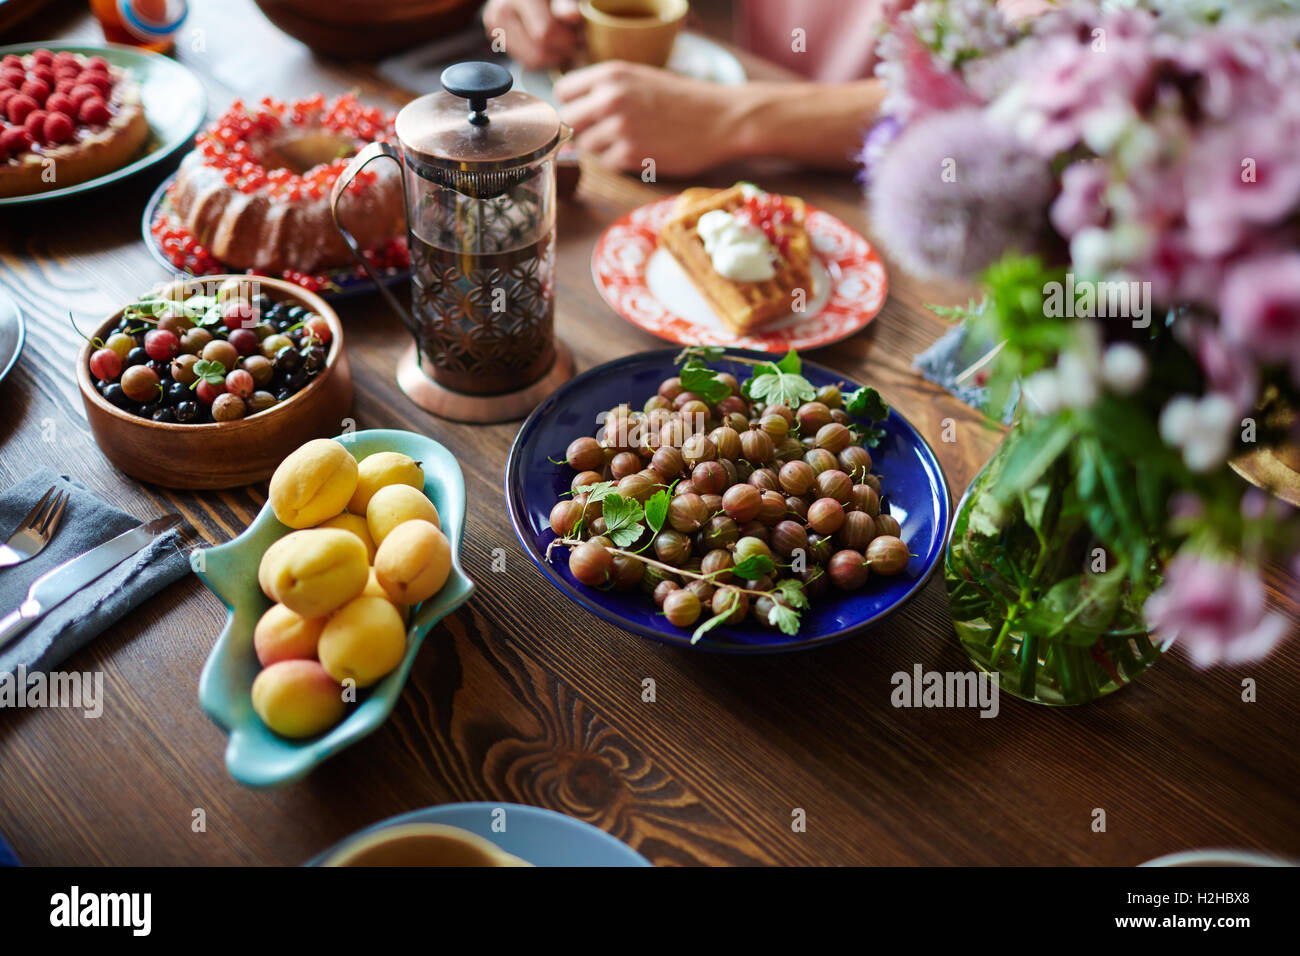 Frische Beeren, Aprikosen und anderes Essen am Tisch serviert Stockfoto